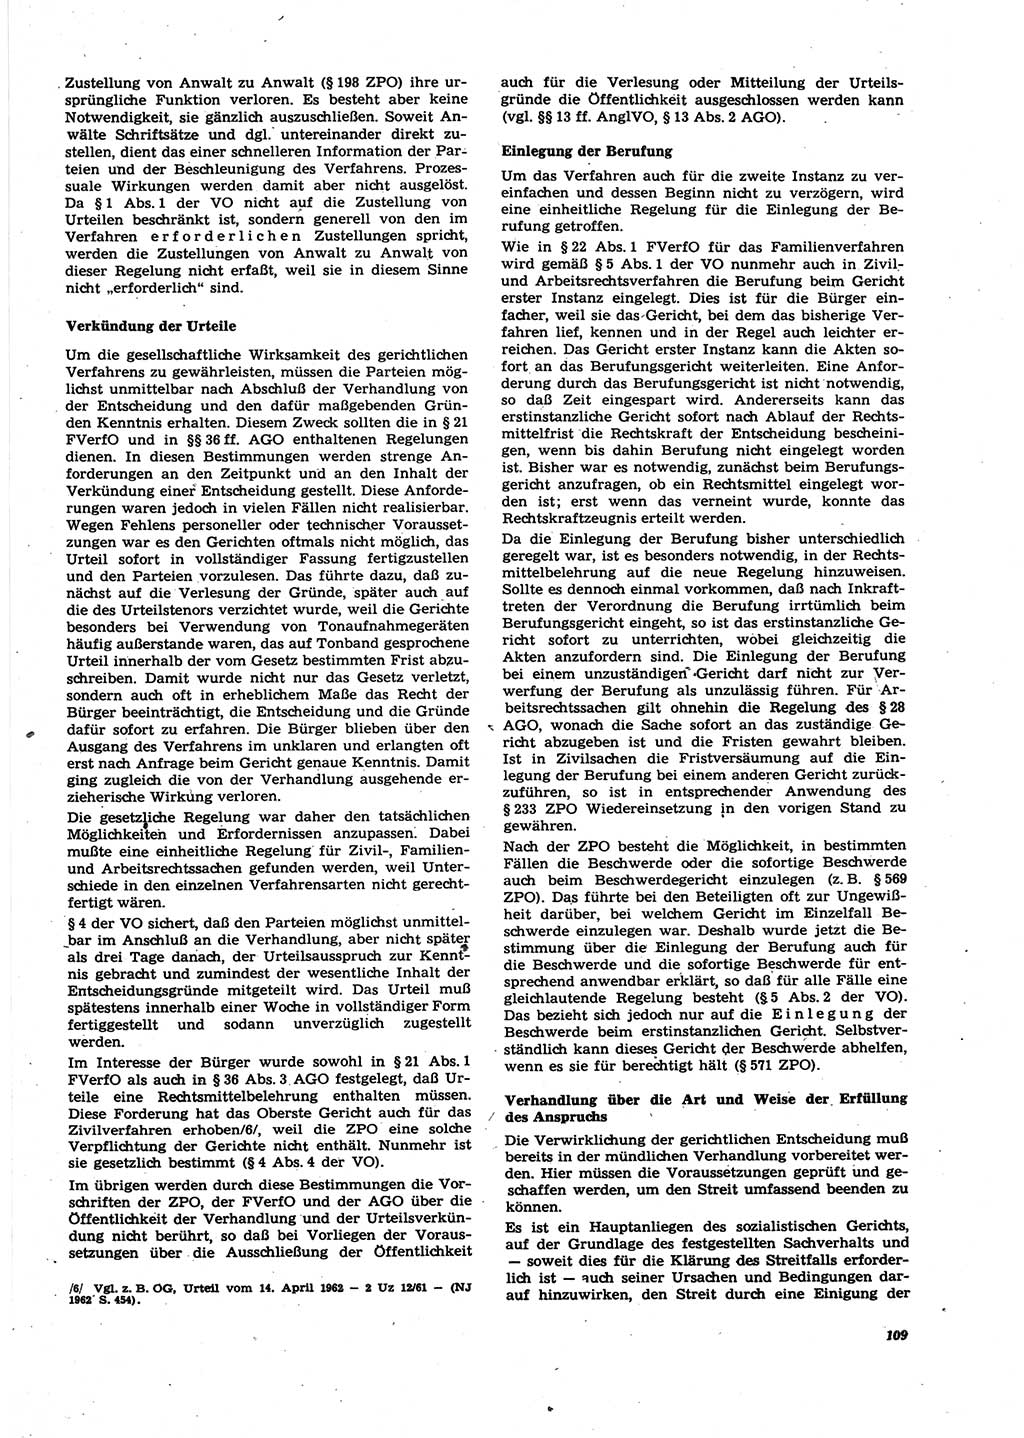 Neue Justiz (NJ), Zeitschrift für Recht und Rechtswissenschaft [Deutsche Demokratische Republik (DDR)], 27. Jahrgang 1973, Seite 109 (NJ DDR 1973, S. 109)